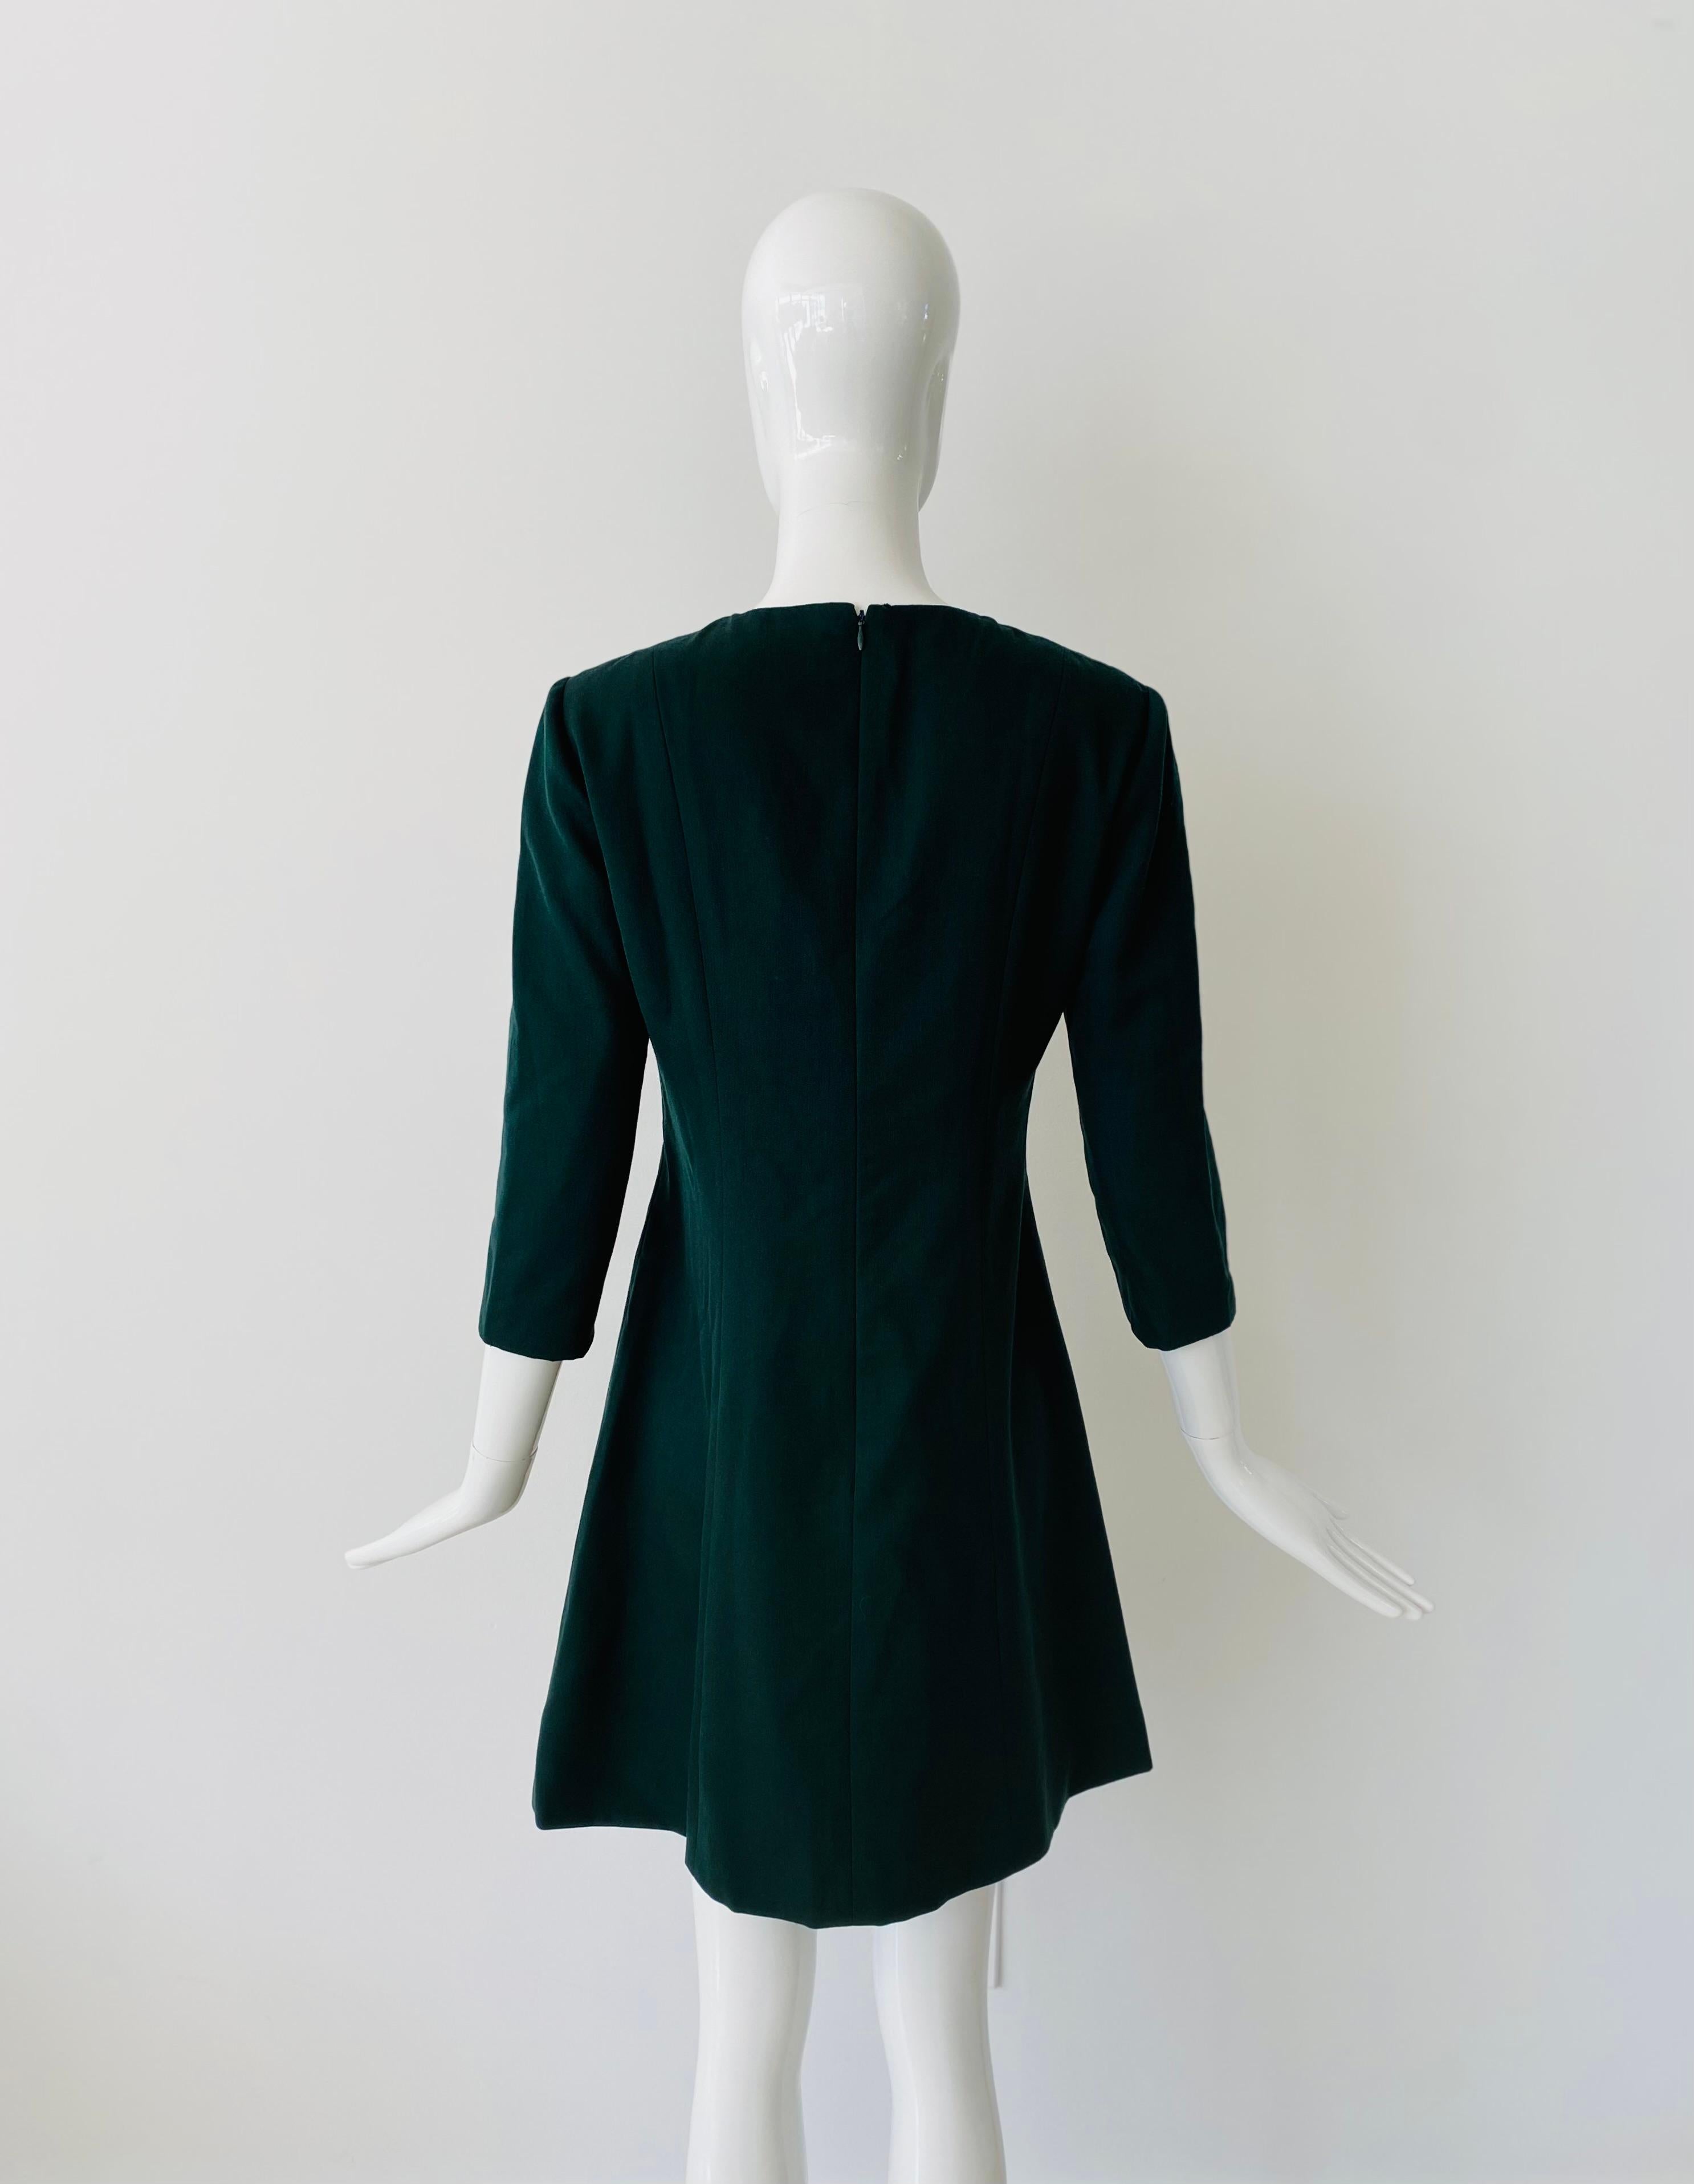 1980er Jahre Vintage Balenciaga Le Dix Wollkleid und Automantel. Der Stoff ist eine schöne waldgrüne helle Wolle mit Seidenfutter. Das Kleid hat 3/4-Ärmel, einen hohen Rundhalsausschnitt, eine leicht taillierte Silhouette und einen ausgestellten